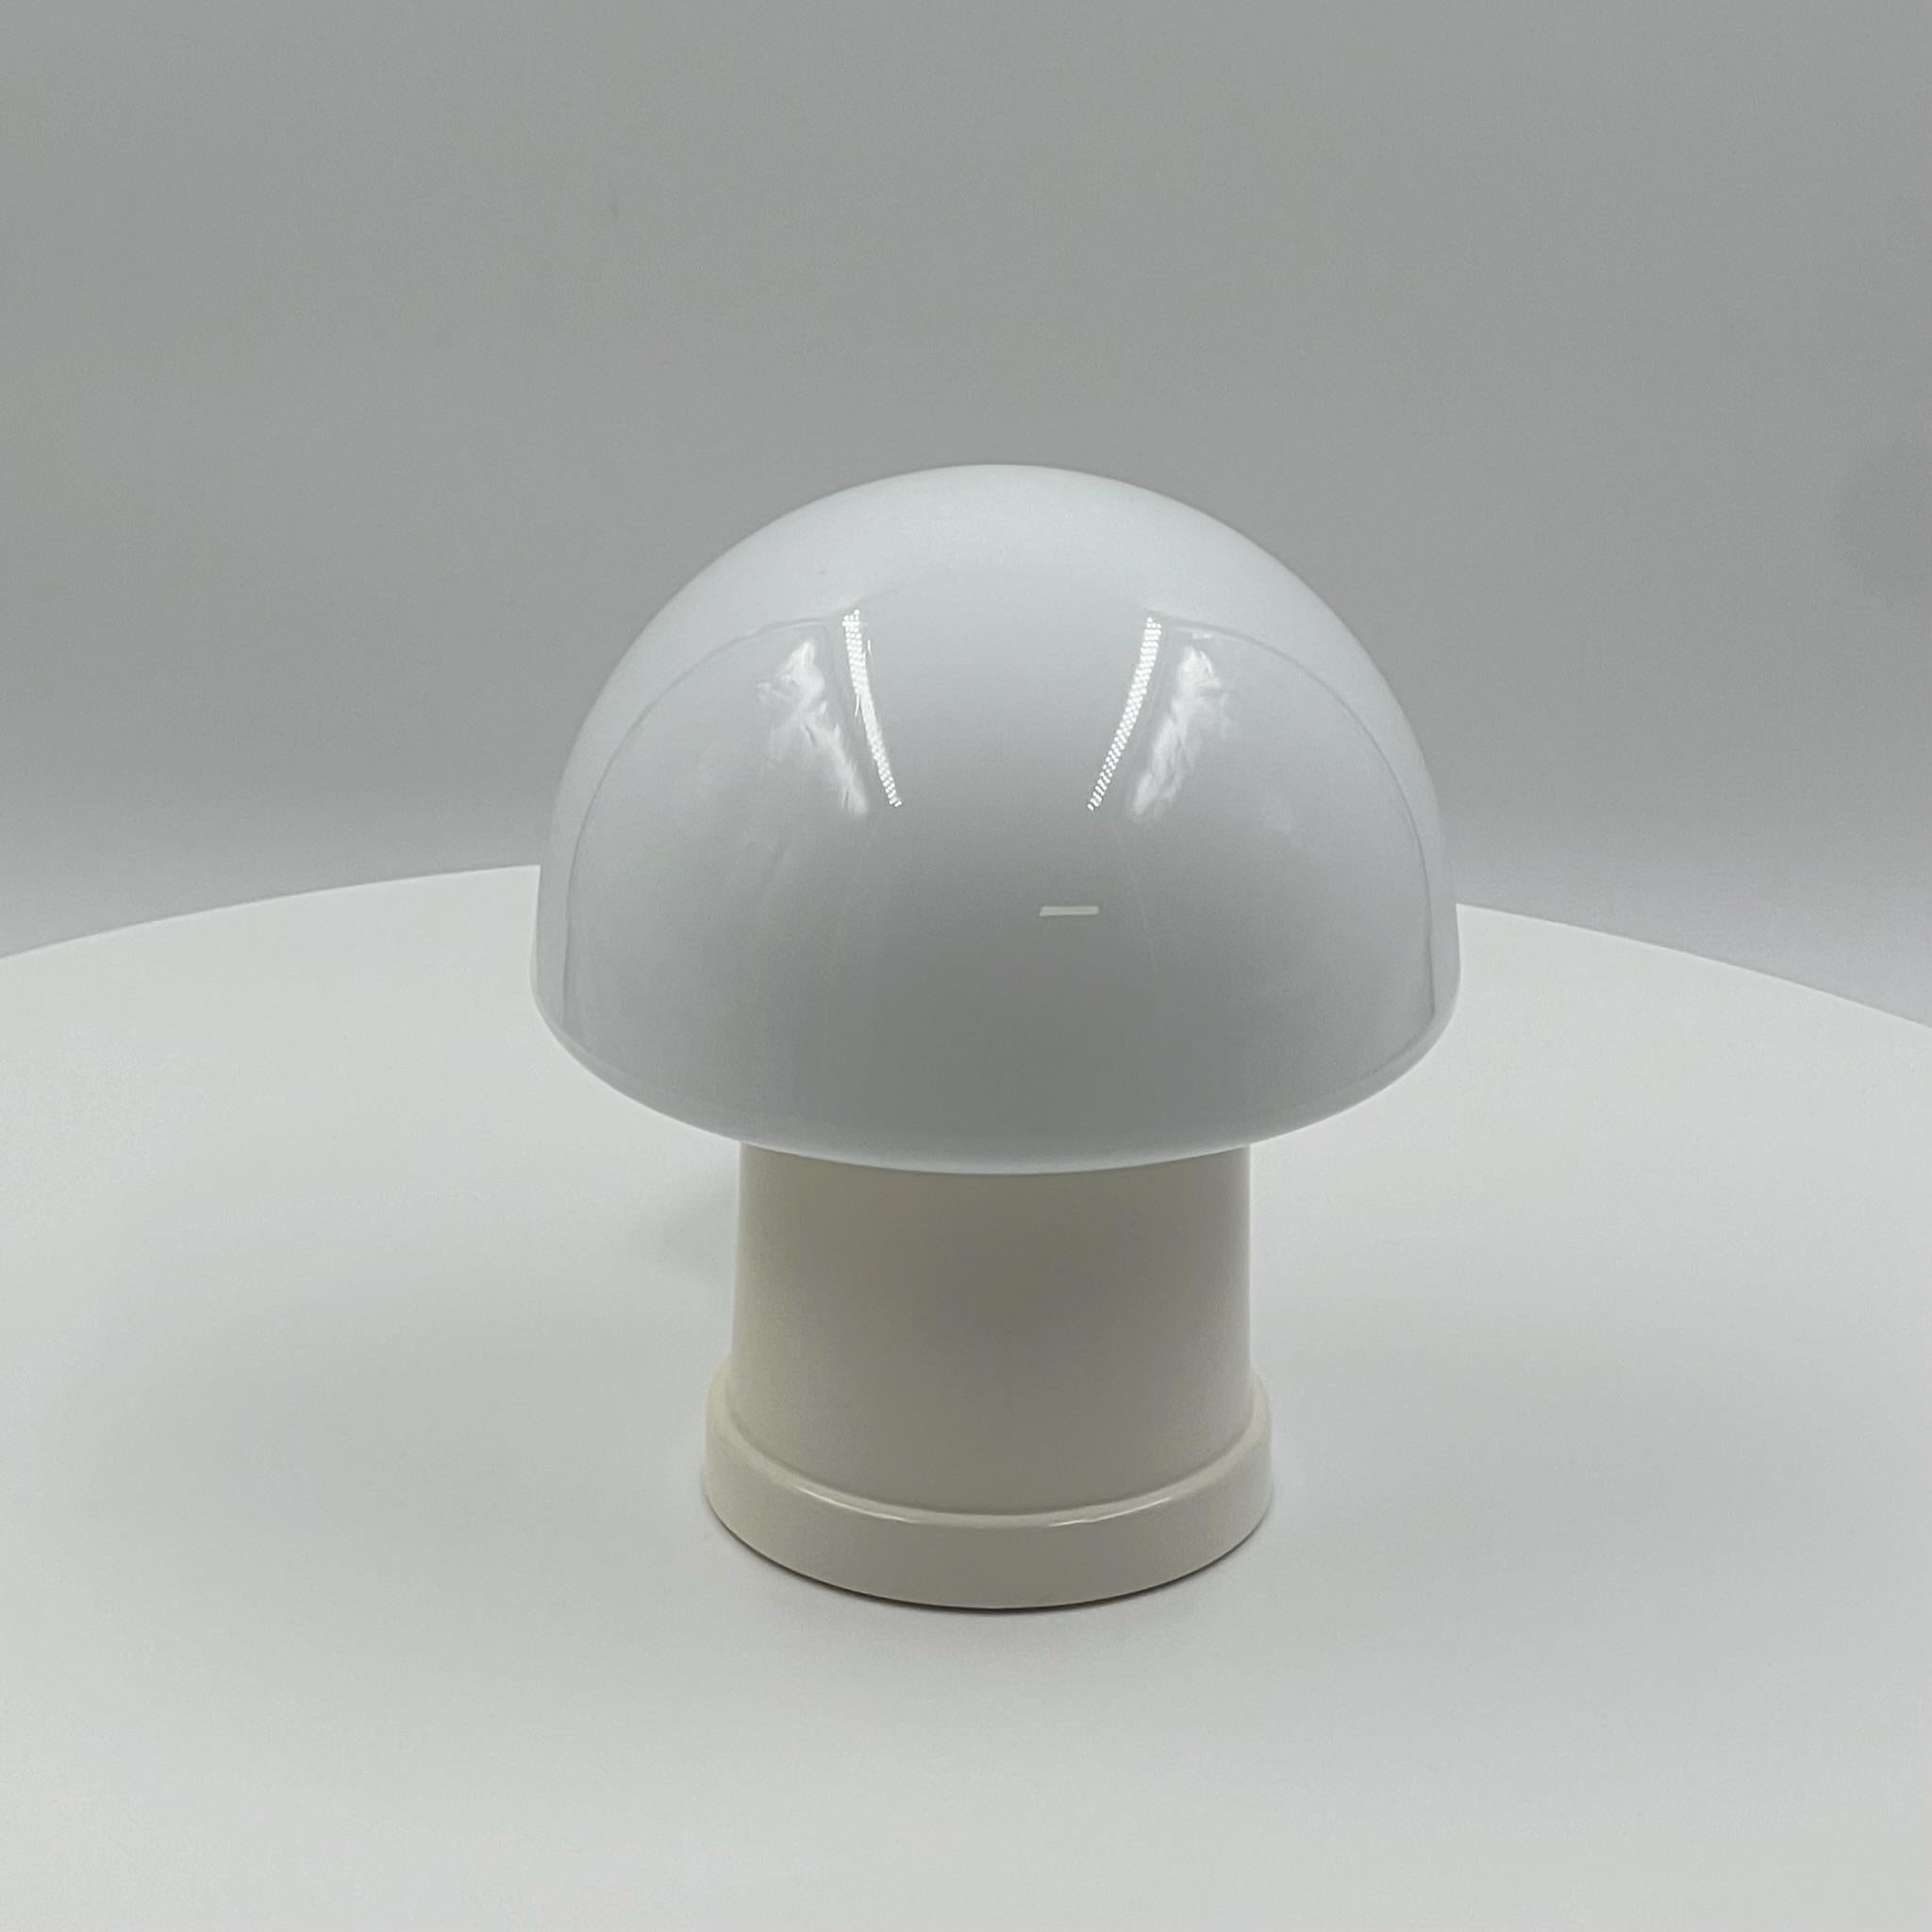 Donnez à votre espace un charme rétro grâce à cette superbe lampe champignon des années 70 fabriquée par Massive, en Belgique, dans les années 1970. Dotée de la forme emblématique de champignon qui incarne le design des années 70, cette lampe est un